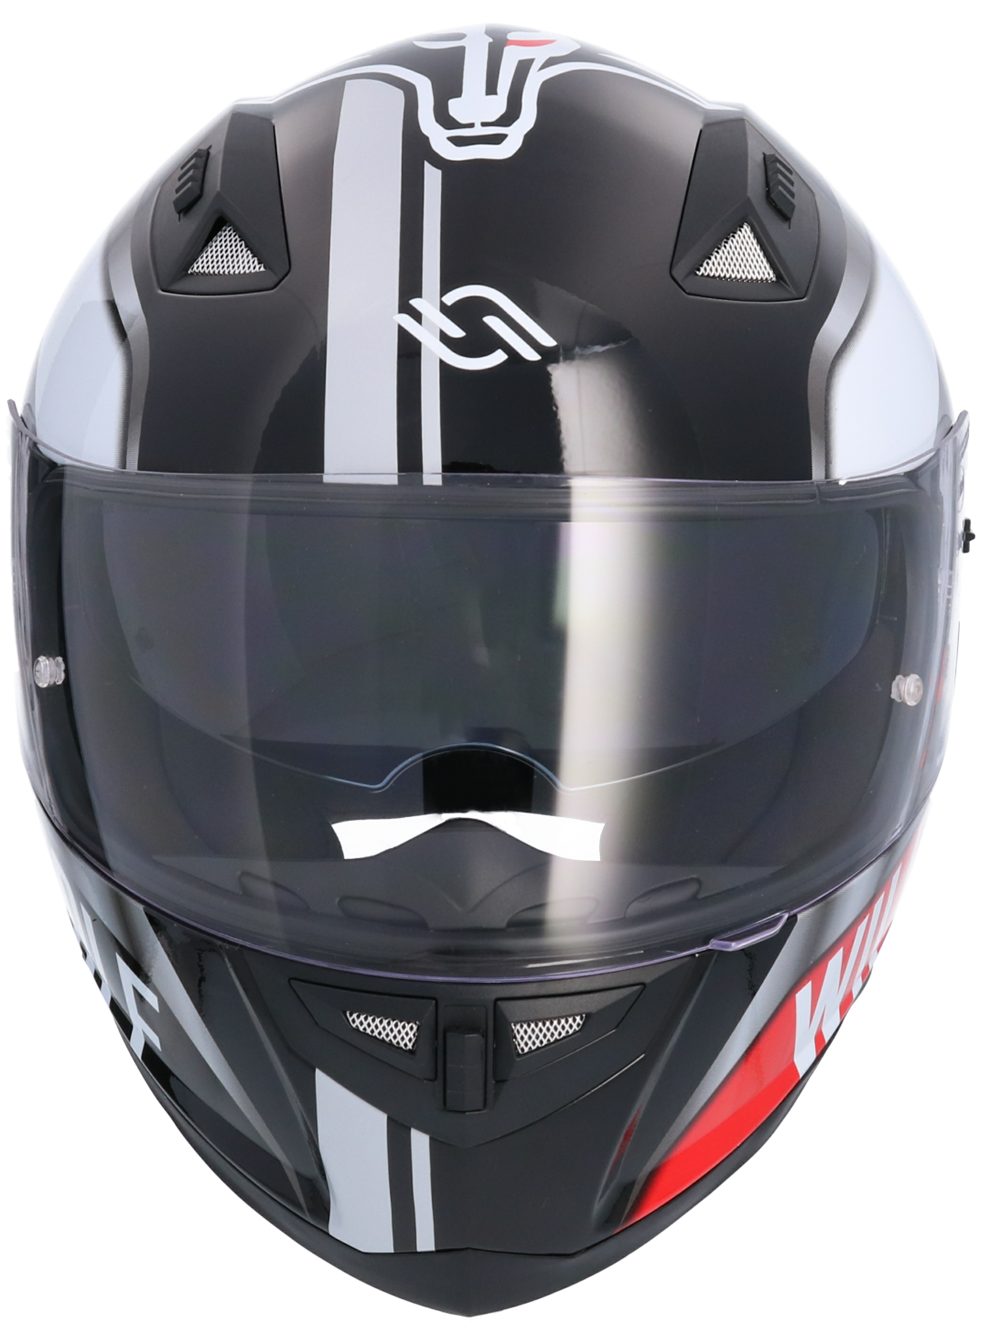 Casco De Moto Integral Ece Homologado Wildwolf Sh881 Edicion Limitada Negro  Casco De Moto Con Doble